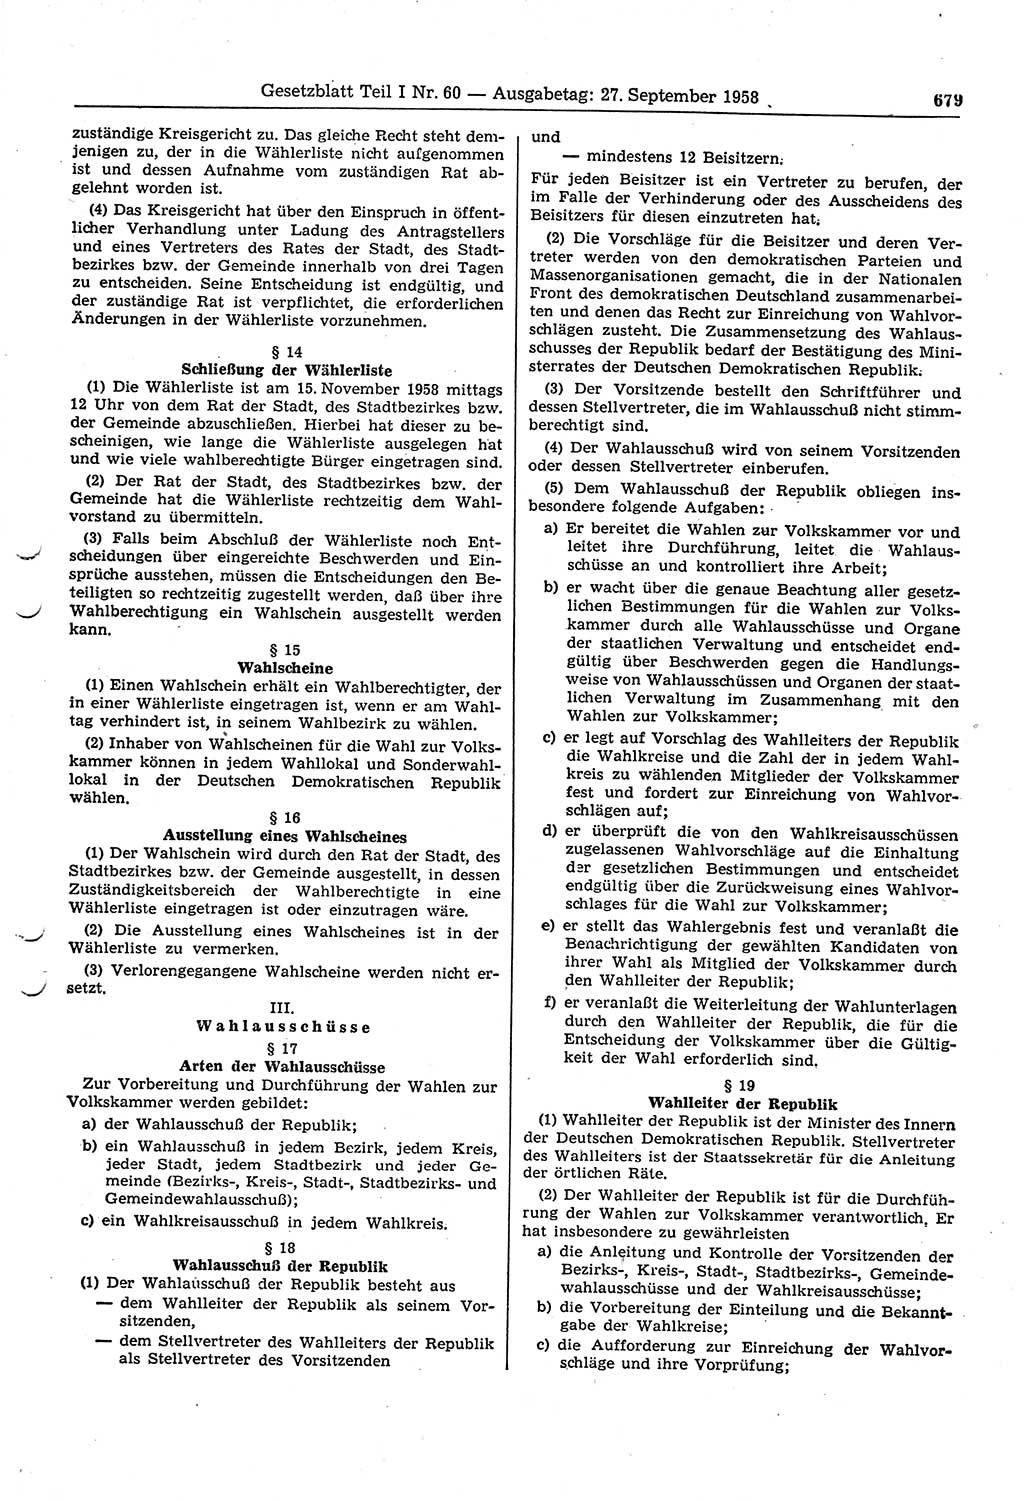 Gesetzblatt (GBl.) der Deutschen Demokratischen Republik (DDR) Teil Ⅰ 1958, Seite 679 (GBl. DDR Ⅰ 1958, S. 679)